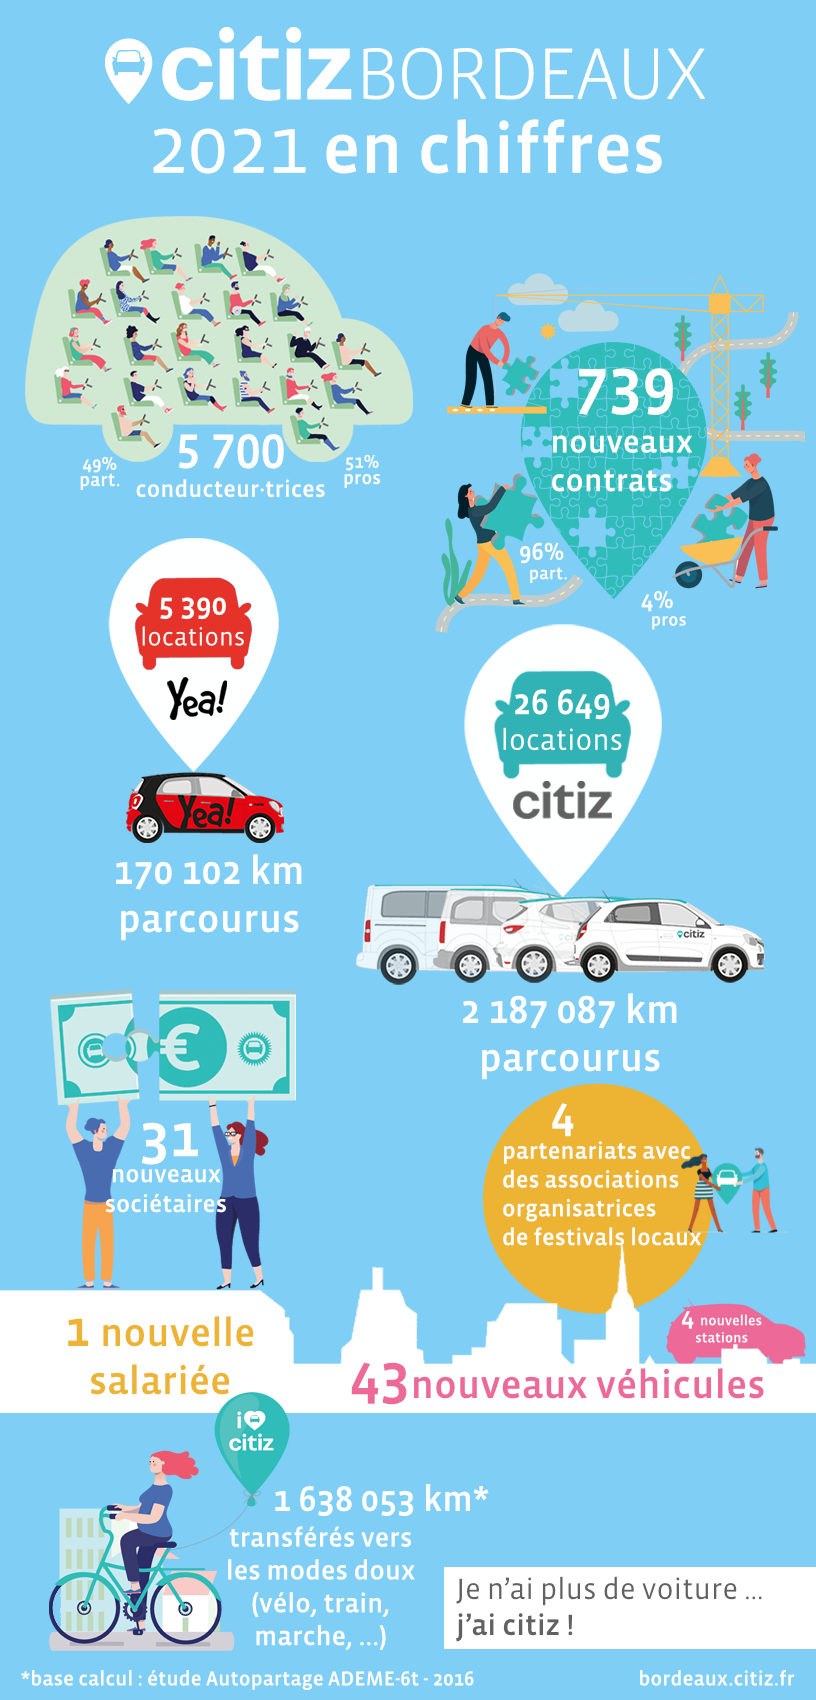 Citiz Bordeaux : 2021 en chiffres